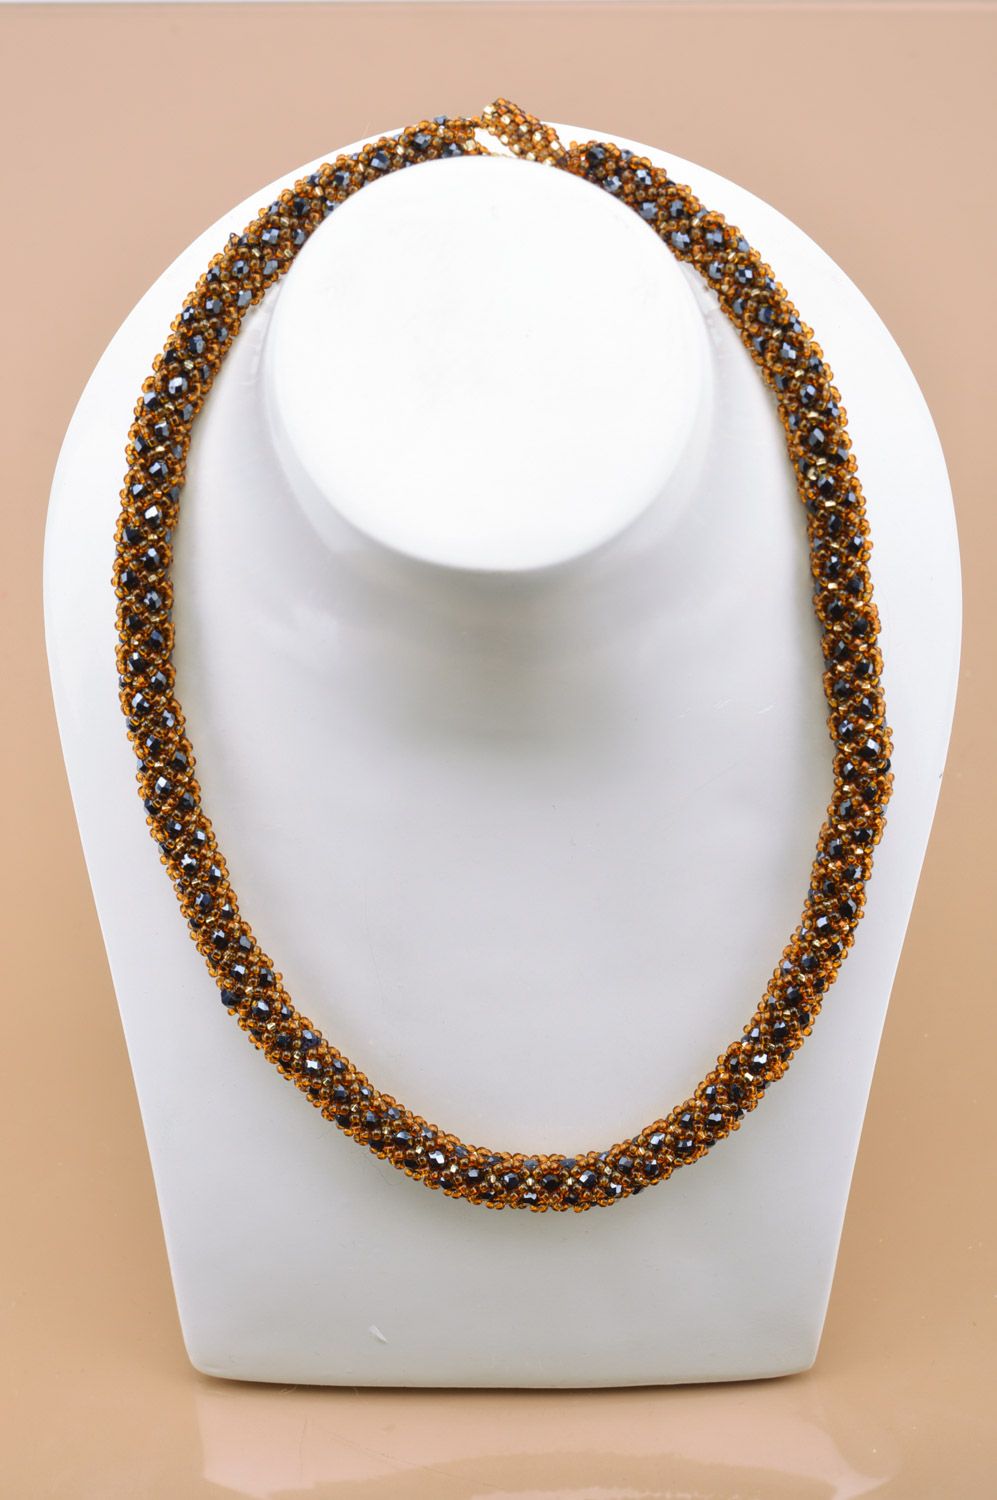 Collier Litze aus Glasperlen und facettierten Perlen in Braun handgemacht foto 3